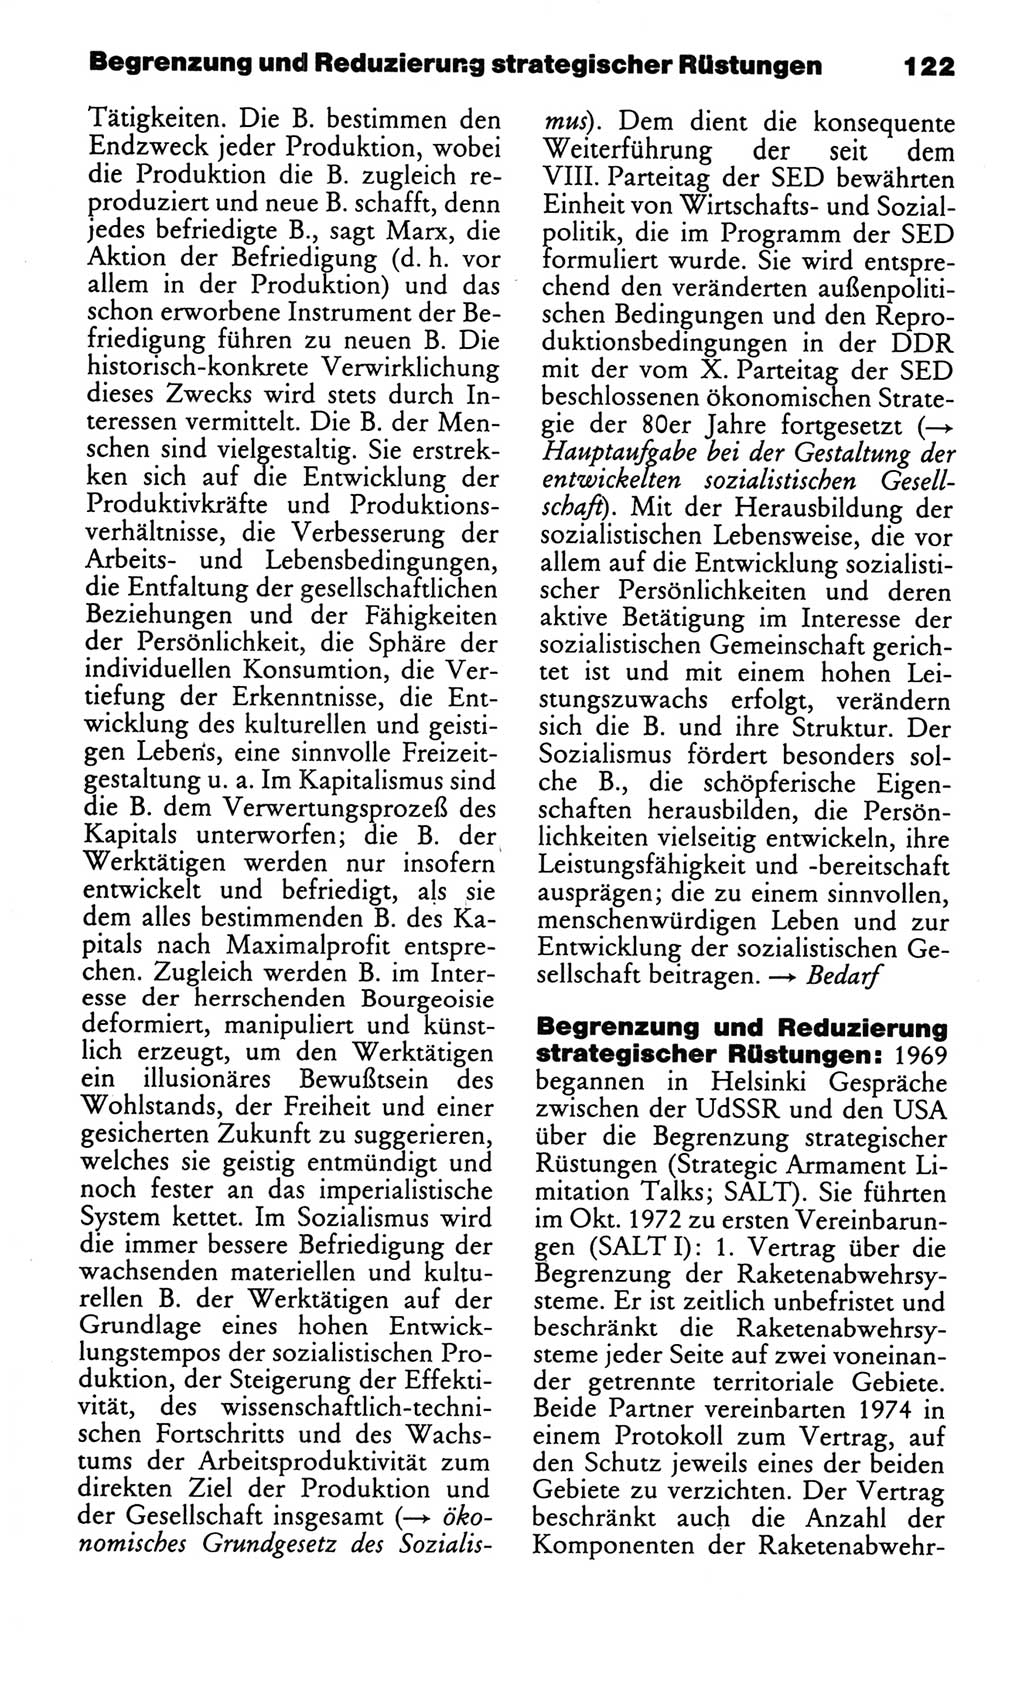 Kleines politisches Wörterbuch [Deutsche Demokratische Republik (DDR)] 1986, Seite 122 (Kl. pol. Wb. DDR 1986, S. 122)